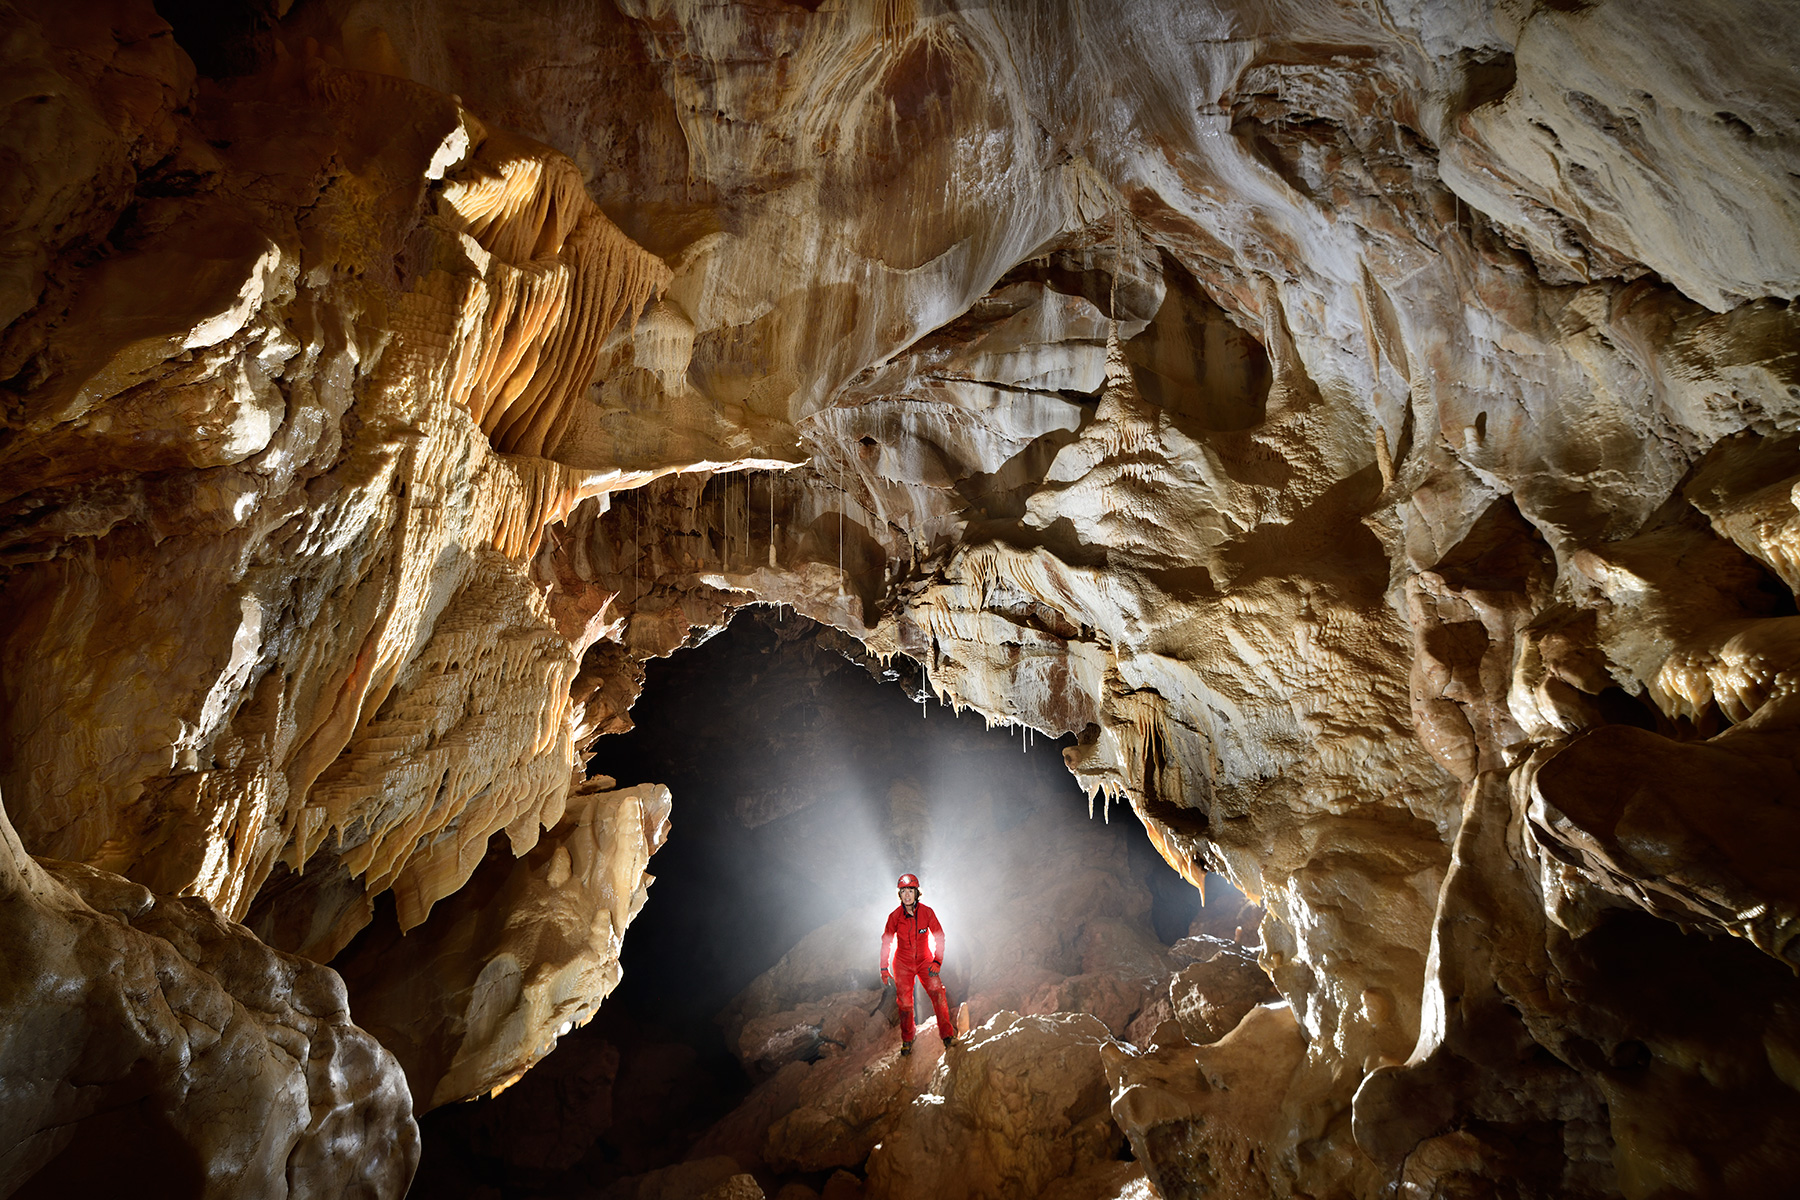 Grotte de Vallorbe (Suisse) - spéléo dans une salle concrétionnée (avec contre-jour accentué par le brouillard)